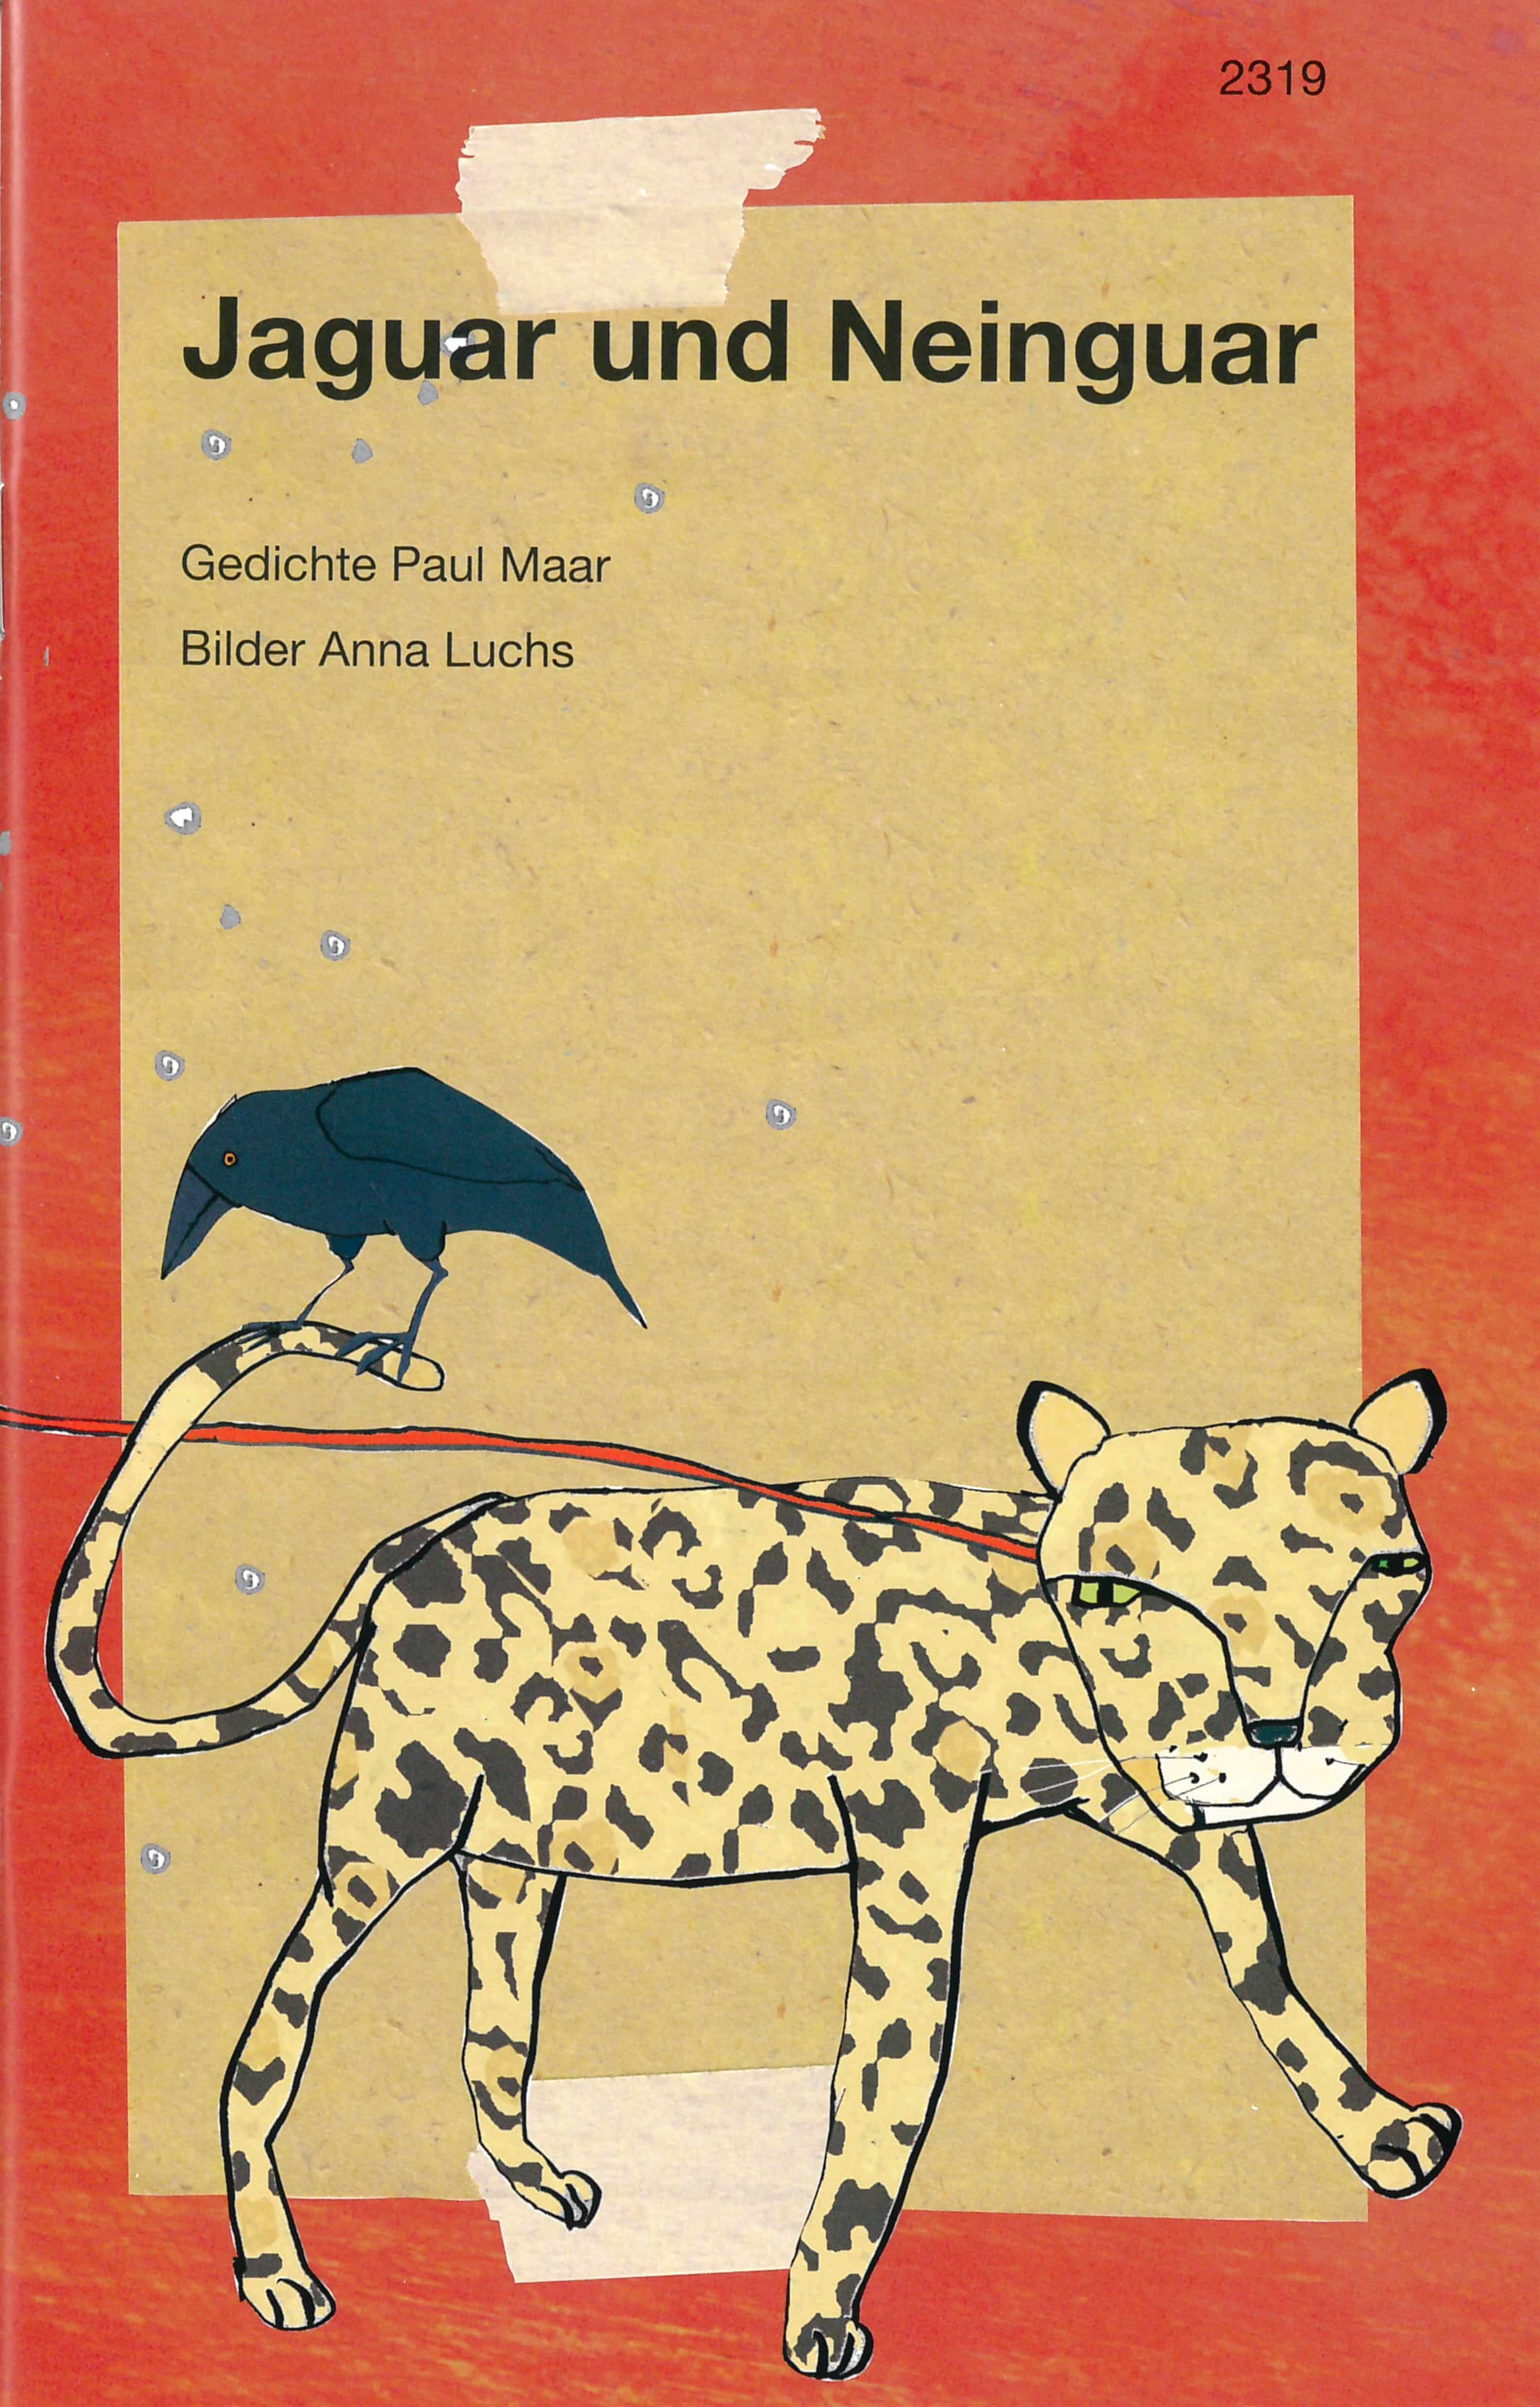 Jaguar und Neinguar, ein Kinderbuch von Paul Maar, Illustration von Anna Luchs, SJW Verlag, Gedichte, Sprachspiele